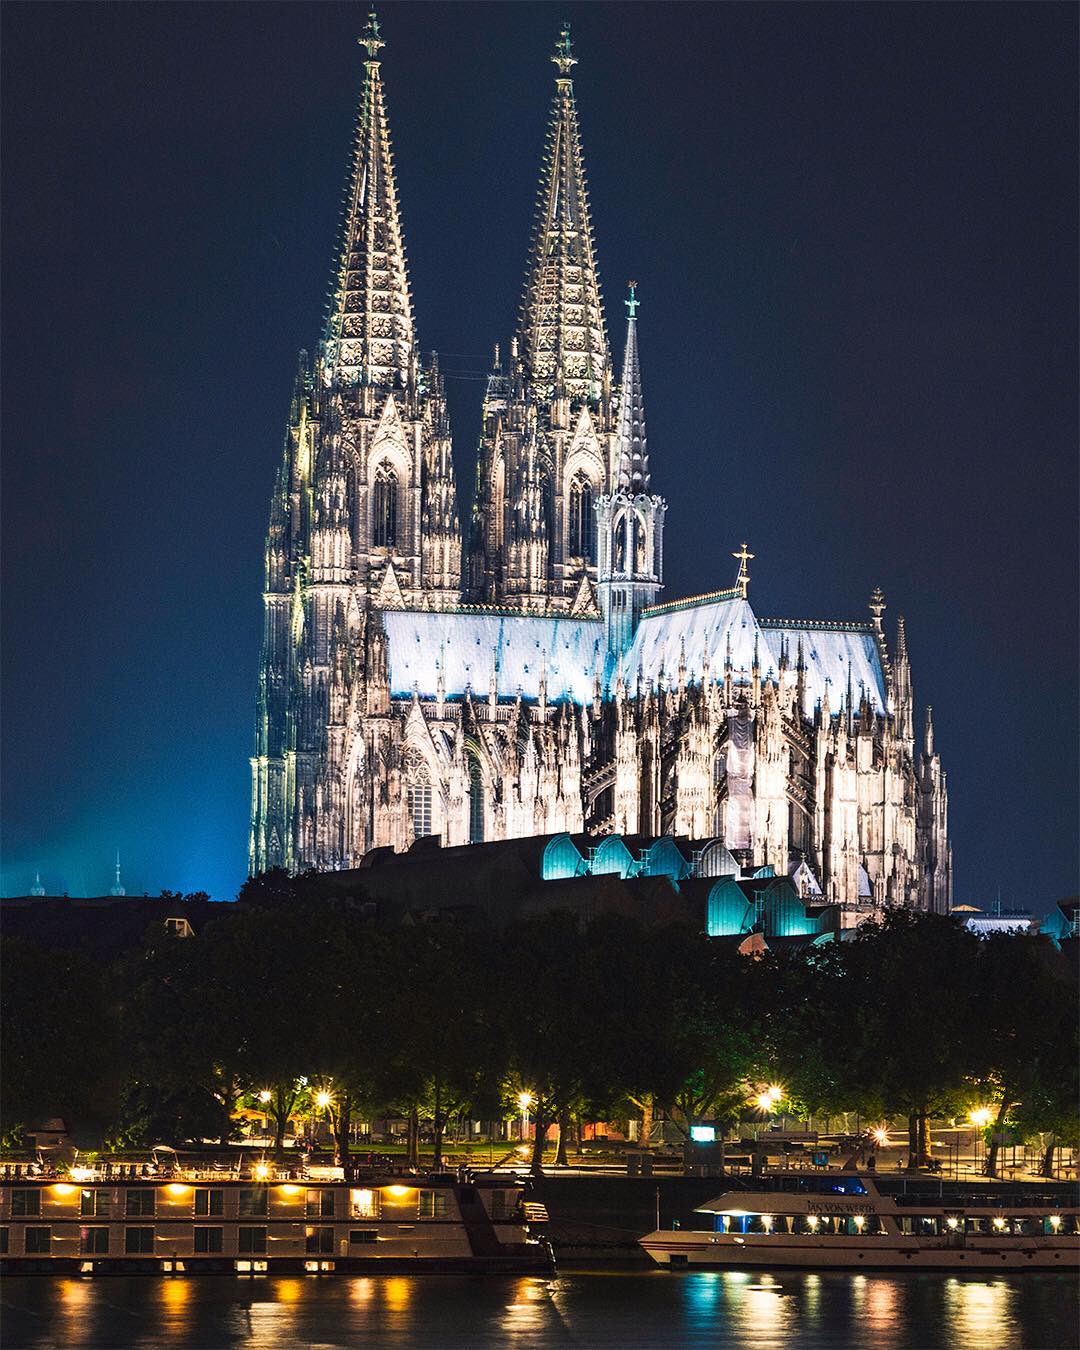 Cologne Cathedral📷
.
.
.
.
#longexposurephotography #longexpohunter #longexpo_addiction #travelandleisure #lastingvisuals #travellingthroughtheworld #globalnightsquad #worldshotz #shotzdelight #citylights #BerlinMyLove #germanytourism #visitgermany #bestgermanypics #in_germany #travel_2_germany #TopGermanyPhoto #LifeofGermany #DeutschlandMyLove #loves_united_germany #europe_vacations #wonderlustcologne #TopColognePhoto #visitkoeln #urbanCGN #beautifuldestinations #eclectic_shotz #visualambassadors #sonyalphaclub #nightshooters